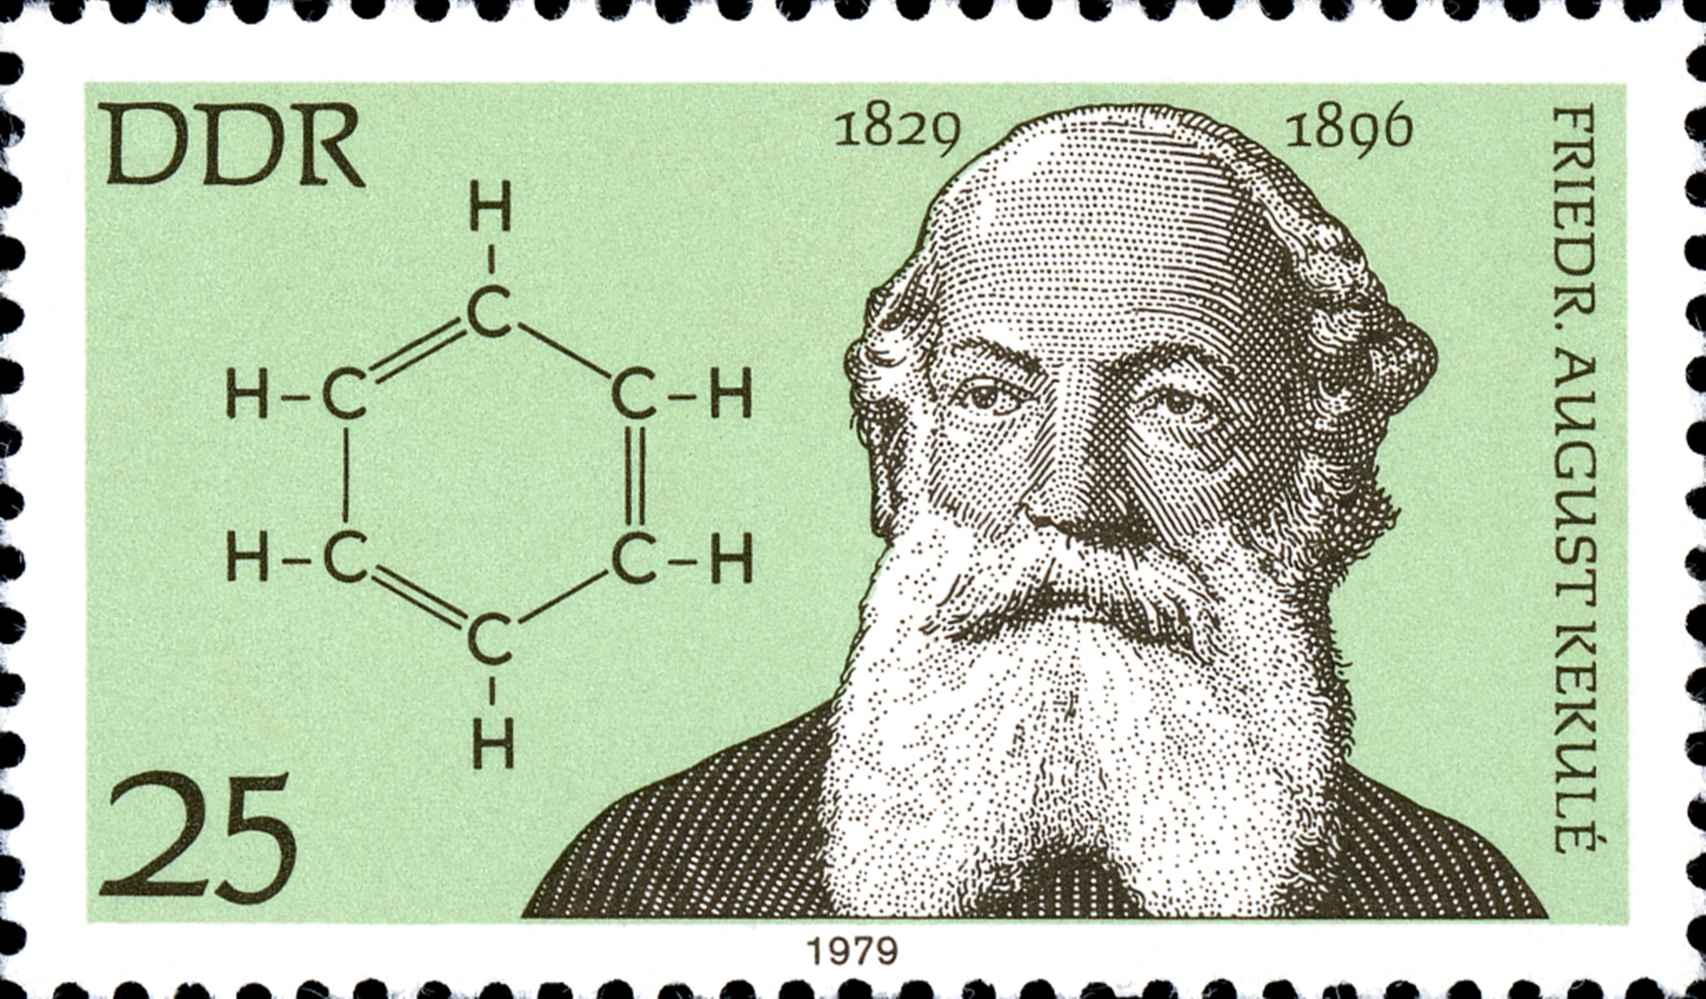 Sello dedicado a August Kekulé, químico alemán que encontró la estructura de la molécula de benceno